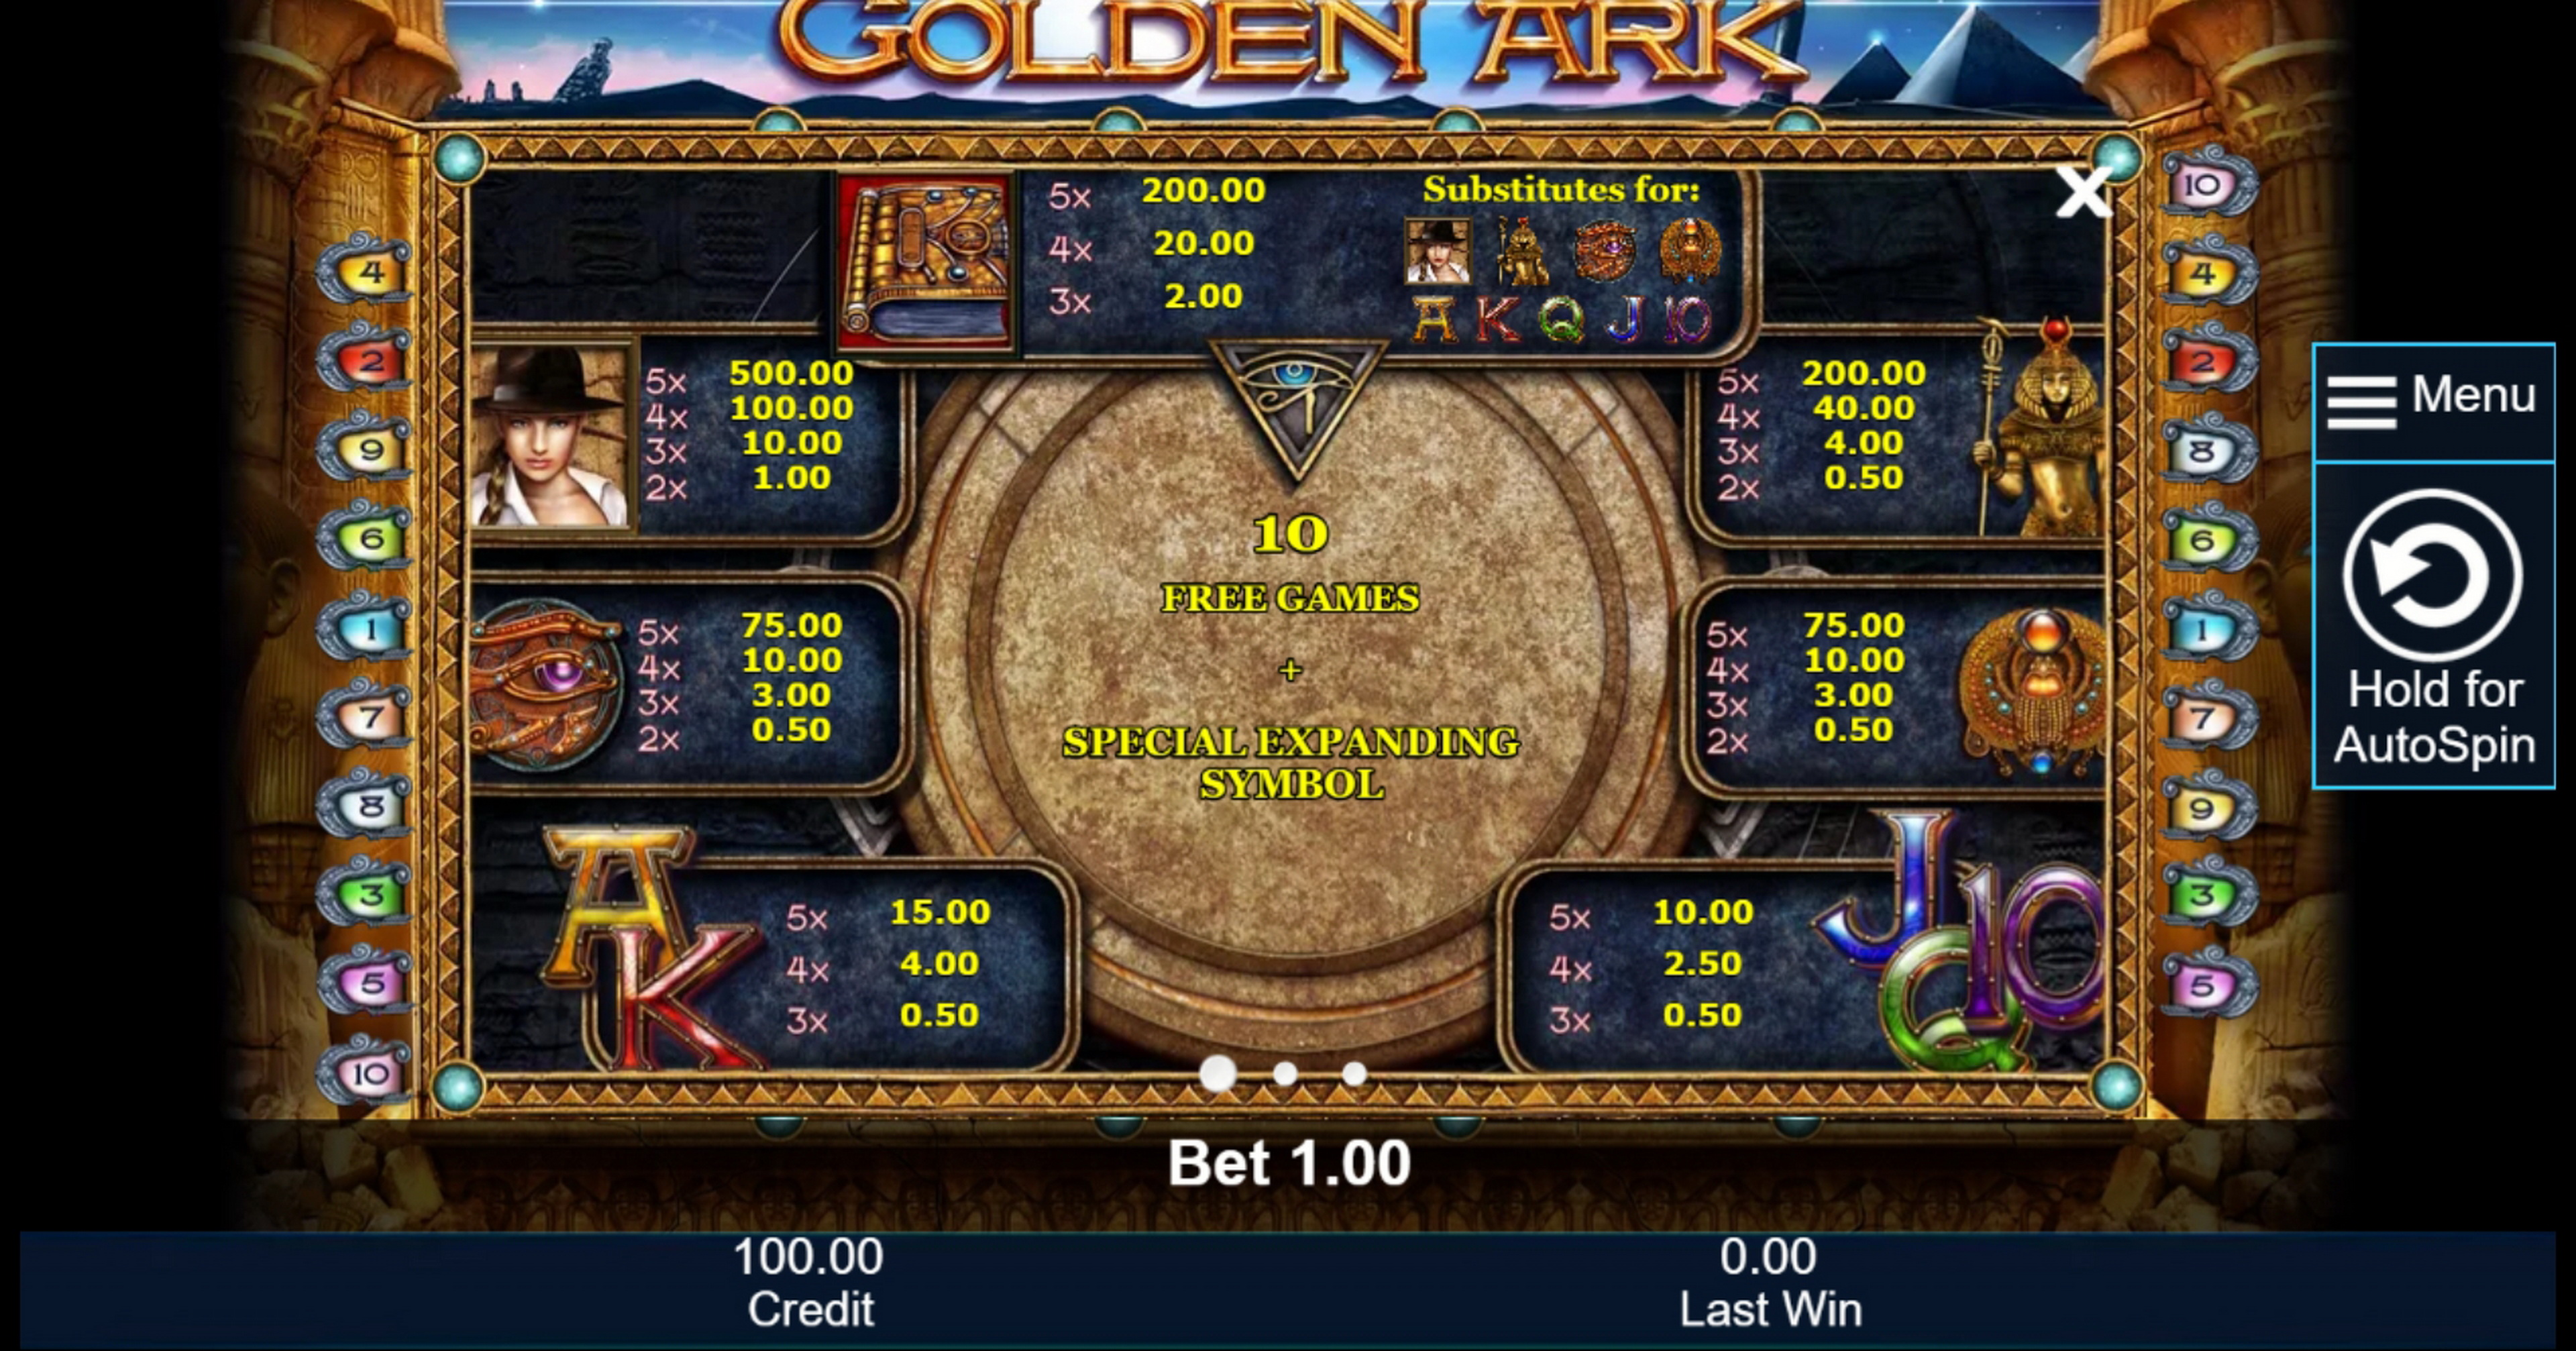 Info of Golden Ark Slot Game by Greentube